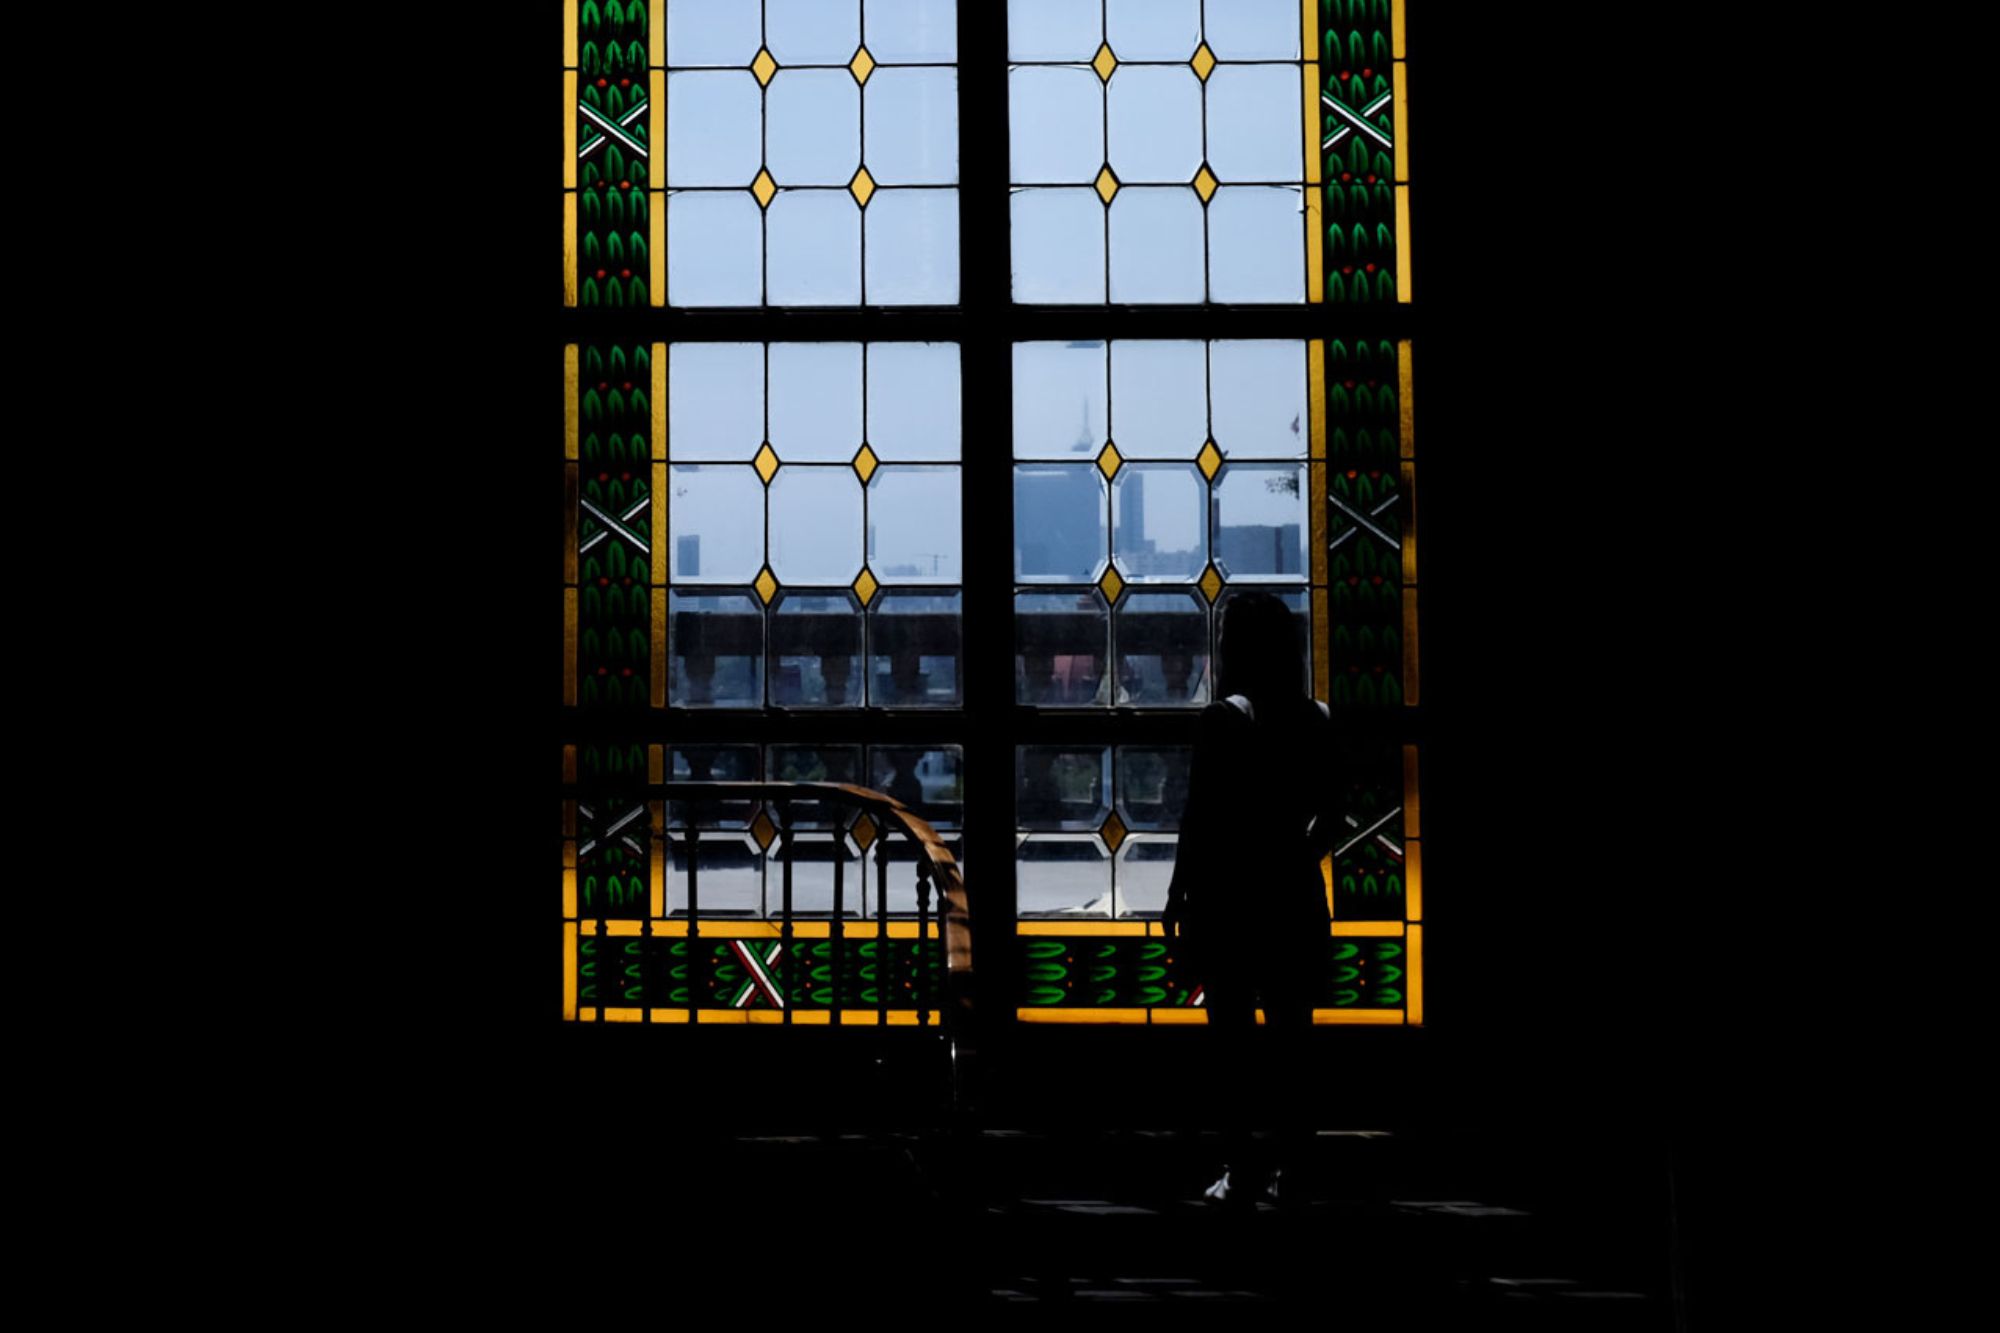 Alyssa is seen in a silhouette against a window